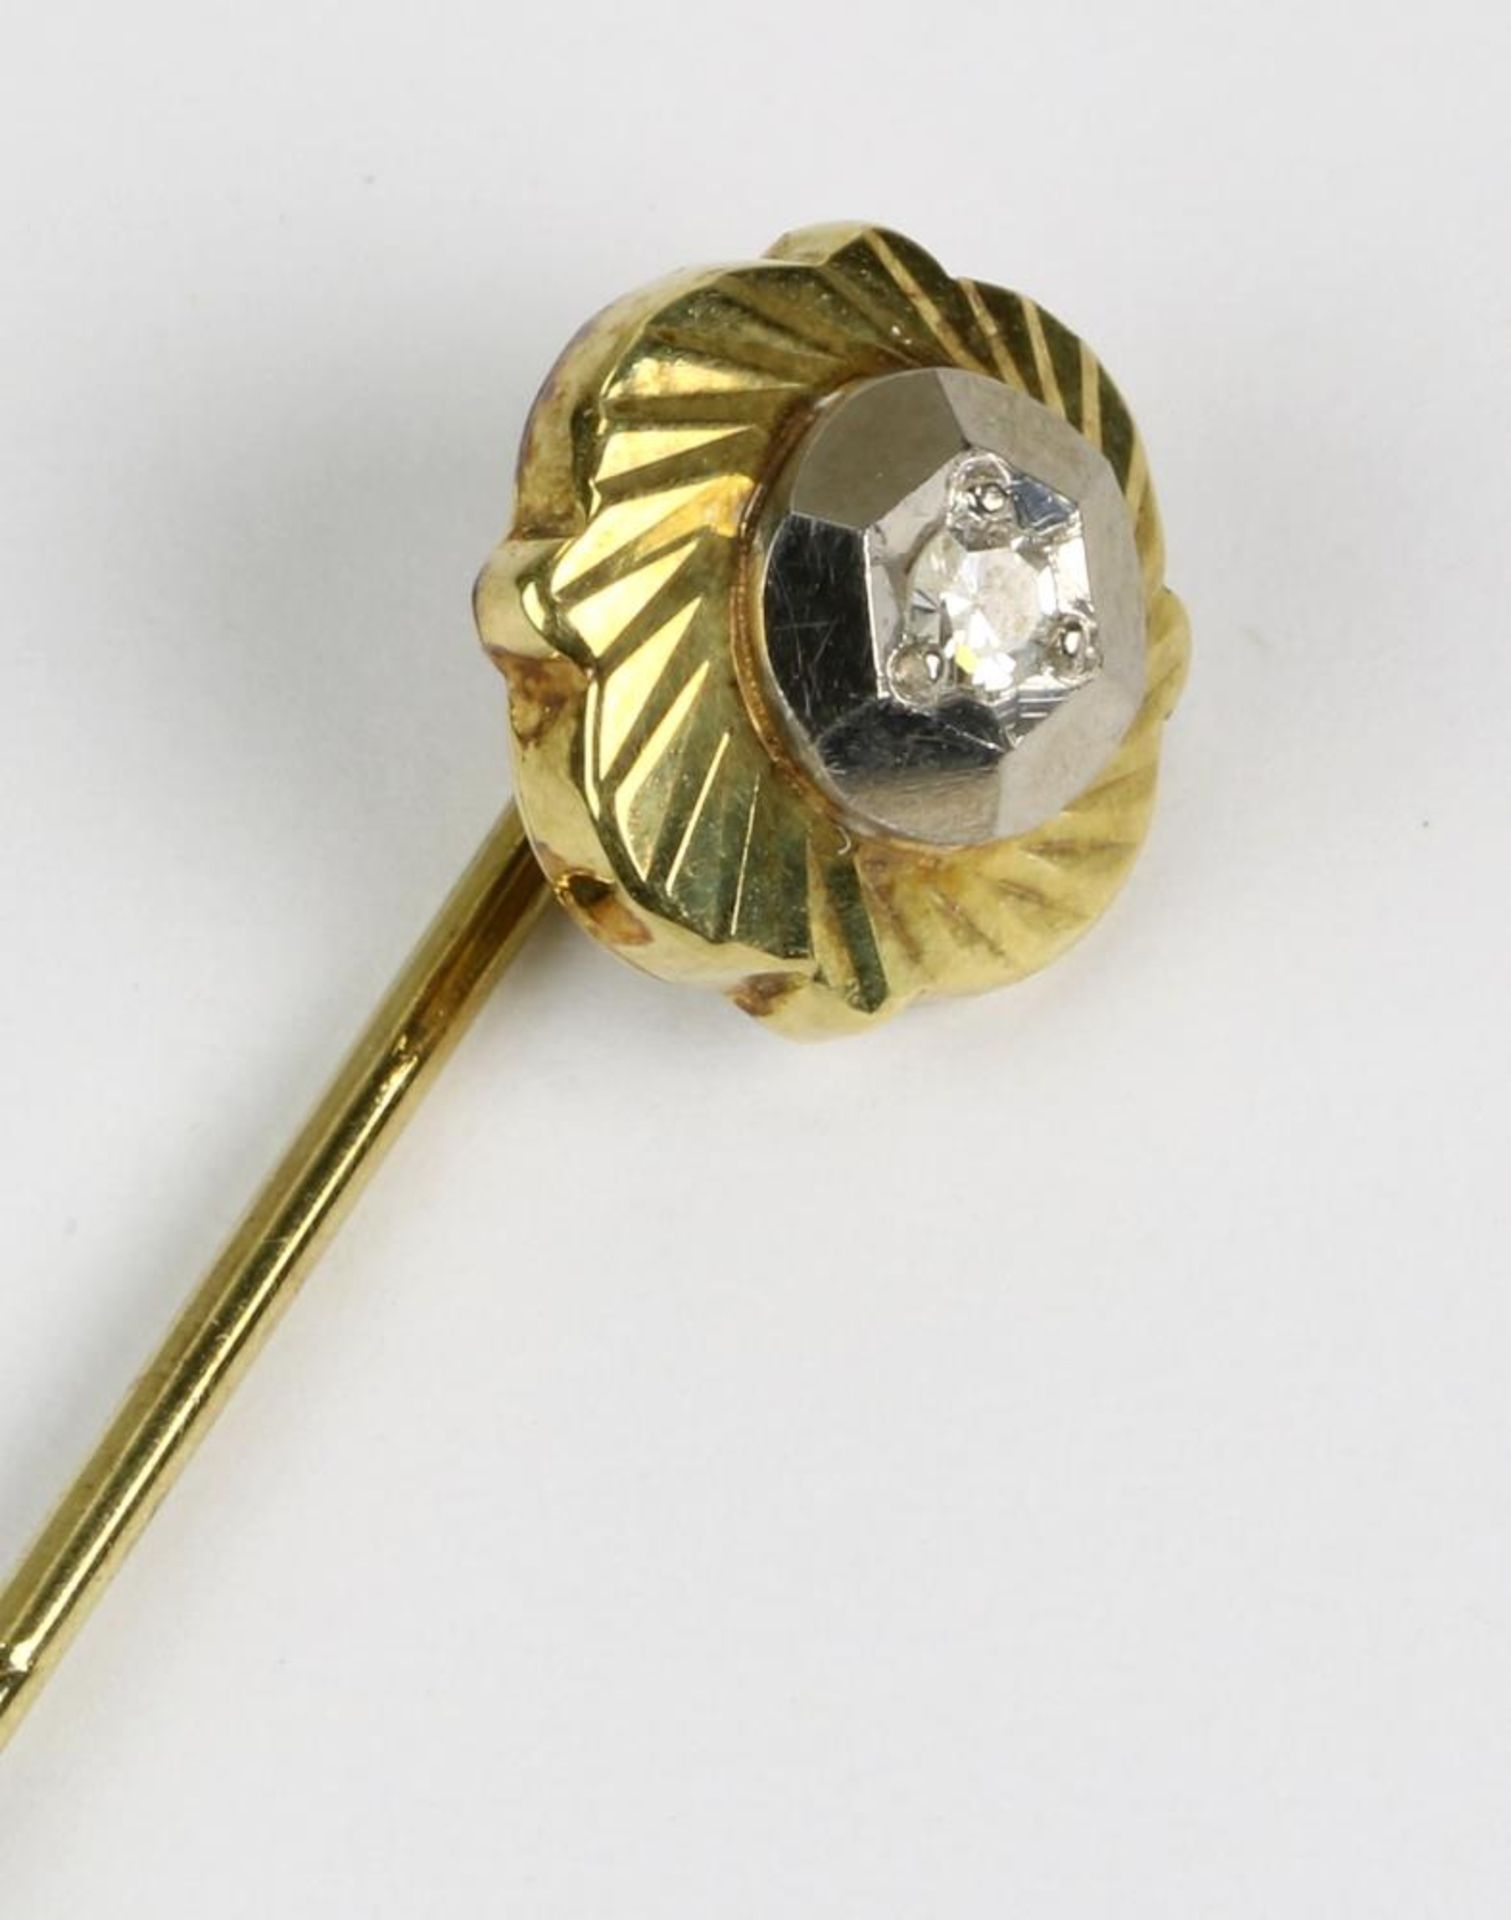 Anstecknadel mit Diamantrose. Deutsch 20. Jahrhundert. Gelbgold 585, Diamantrose ca. 0,05 Carat in - Bild 2 aus 2